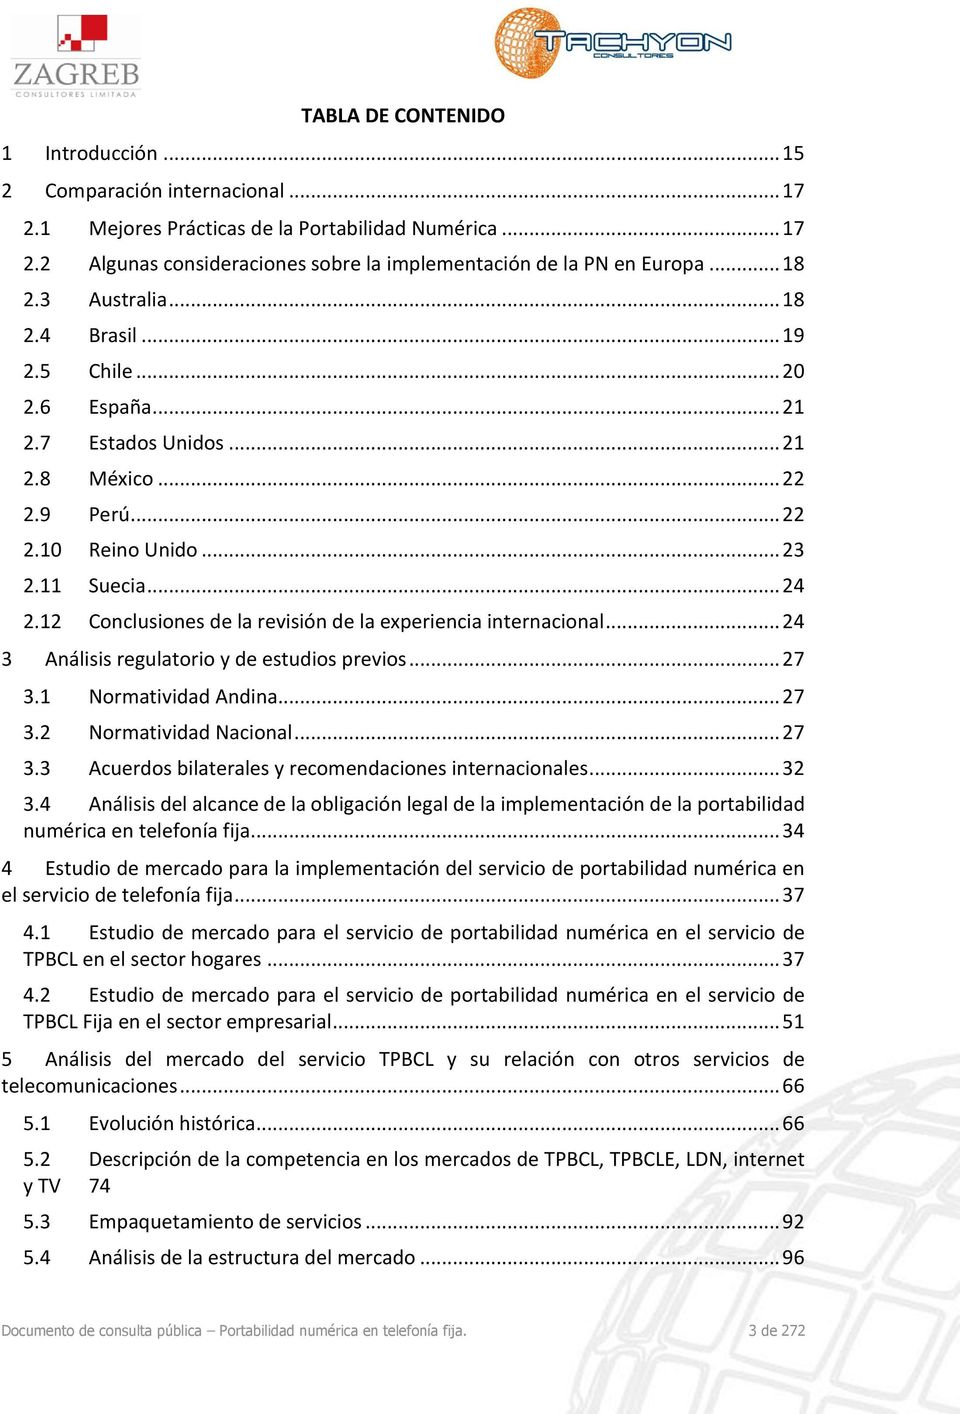 12 Conclusiones de la revisión de la experiencia internacional... 24 3 Análisis regulatorio y de estudios previos... 27 3.1 Normatividad Andina... 27 3.2 Normatividad Nacional... 27 3.3 Acuerdos bilaterales y recomendaciones internacionales.